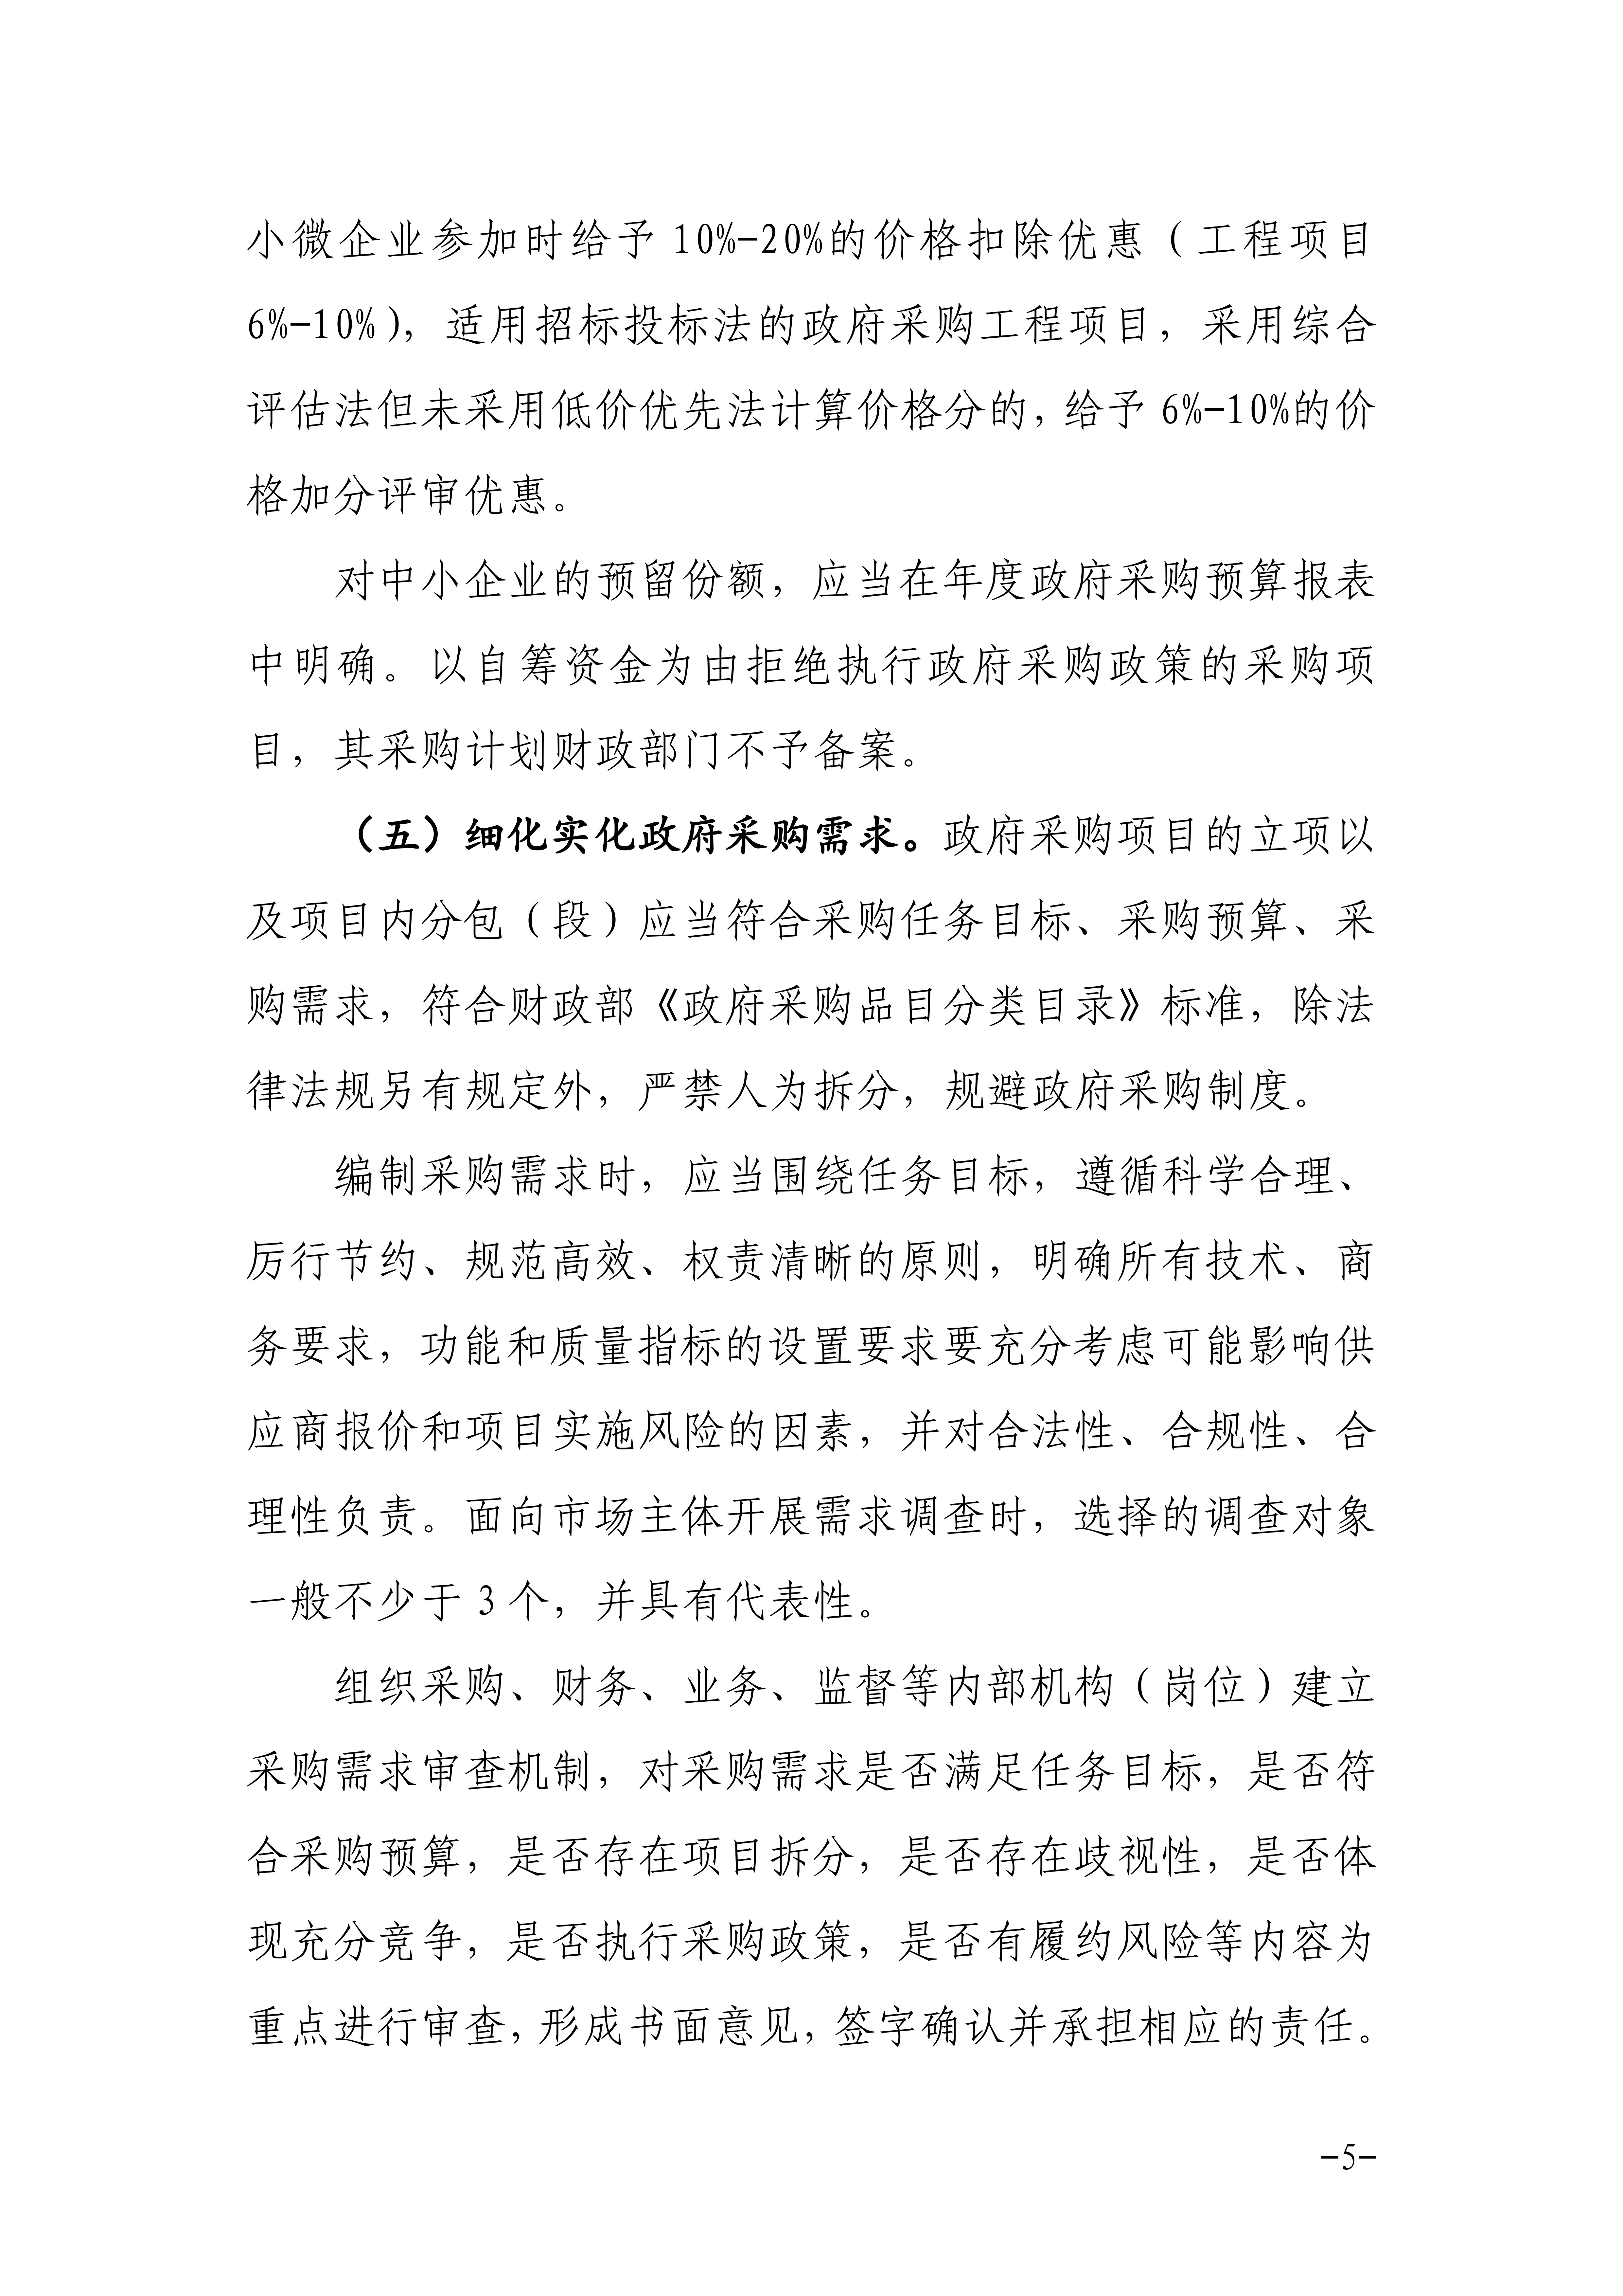 邵阳市关于进一步加强政府采购工作的通知_04.png